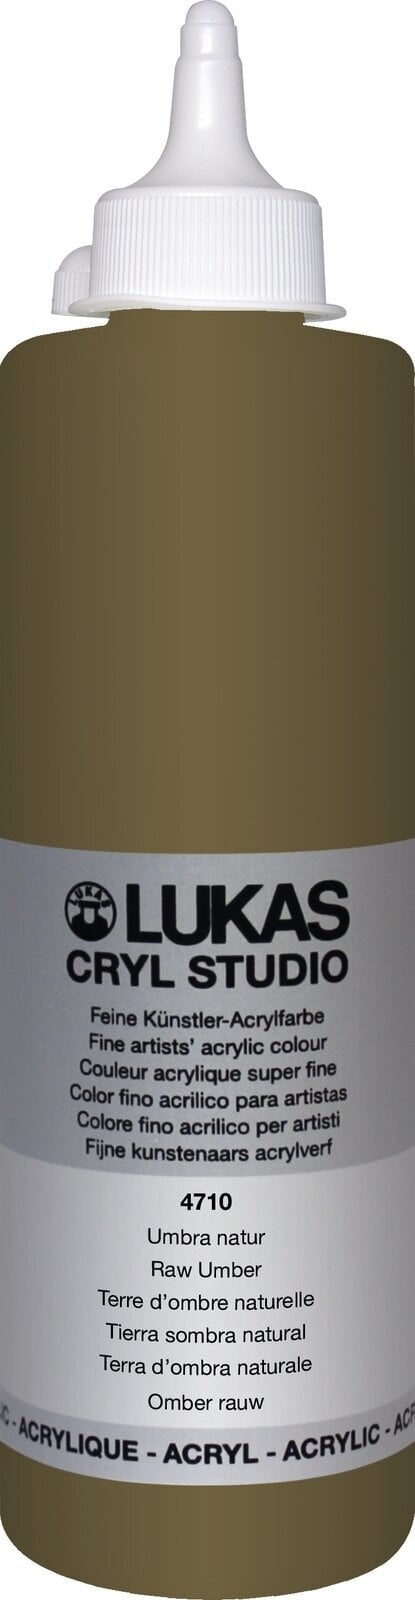 Akrylová barva Lukas Cryl Studio Akrylová barva 500 ml Raw Umber